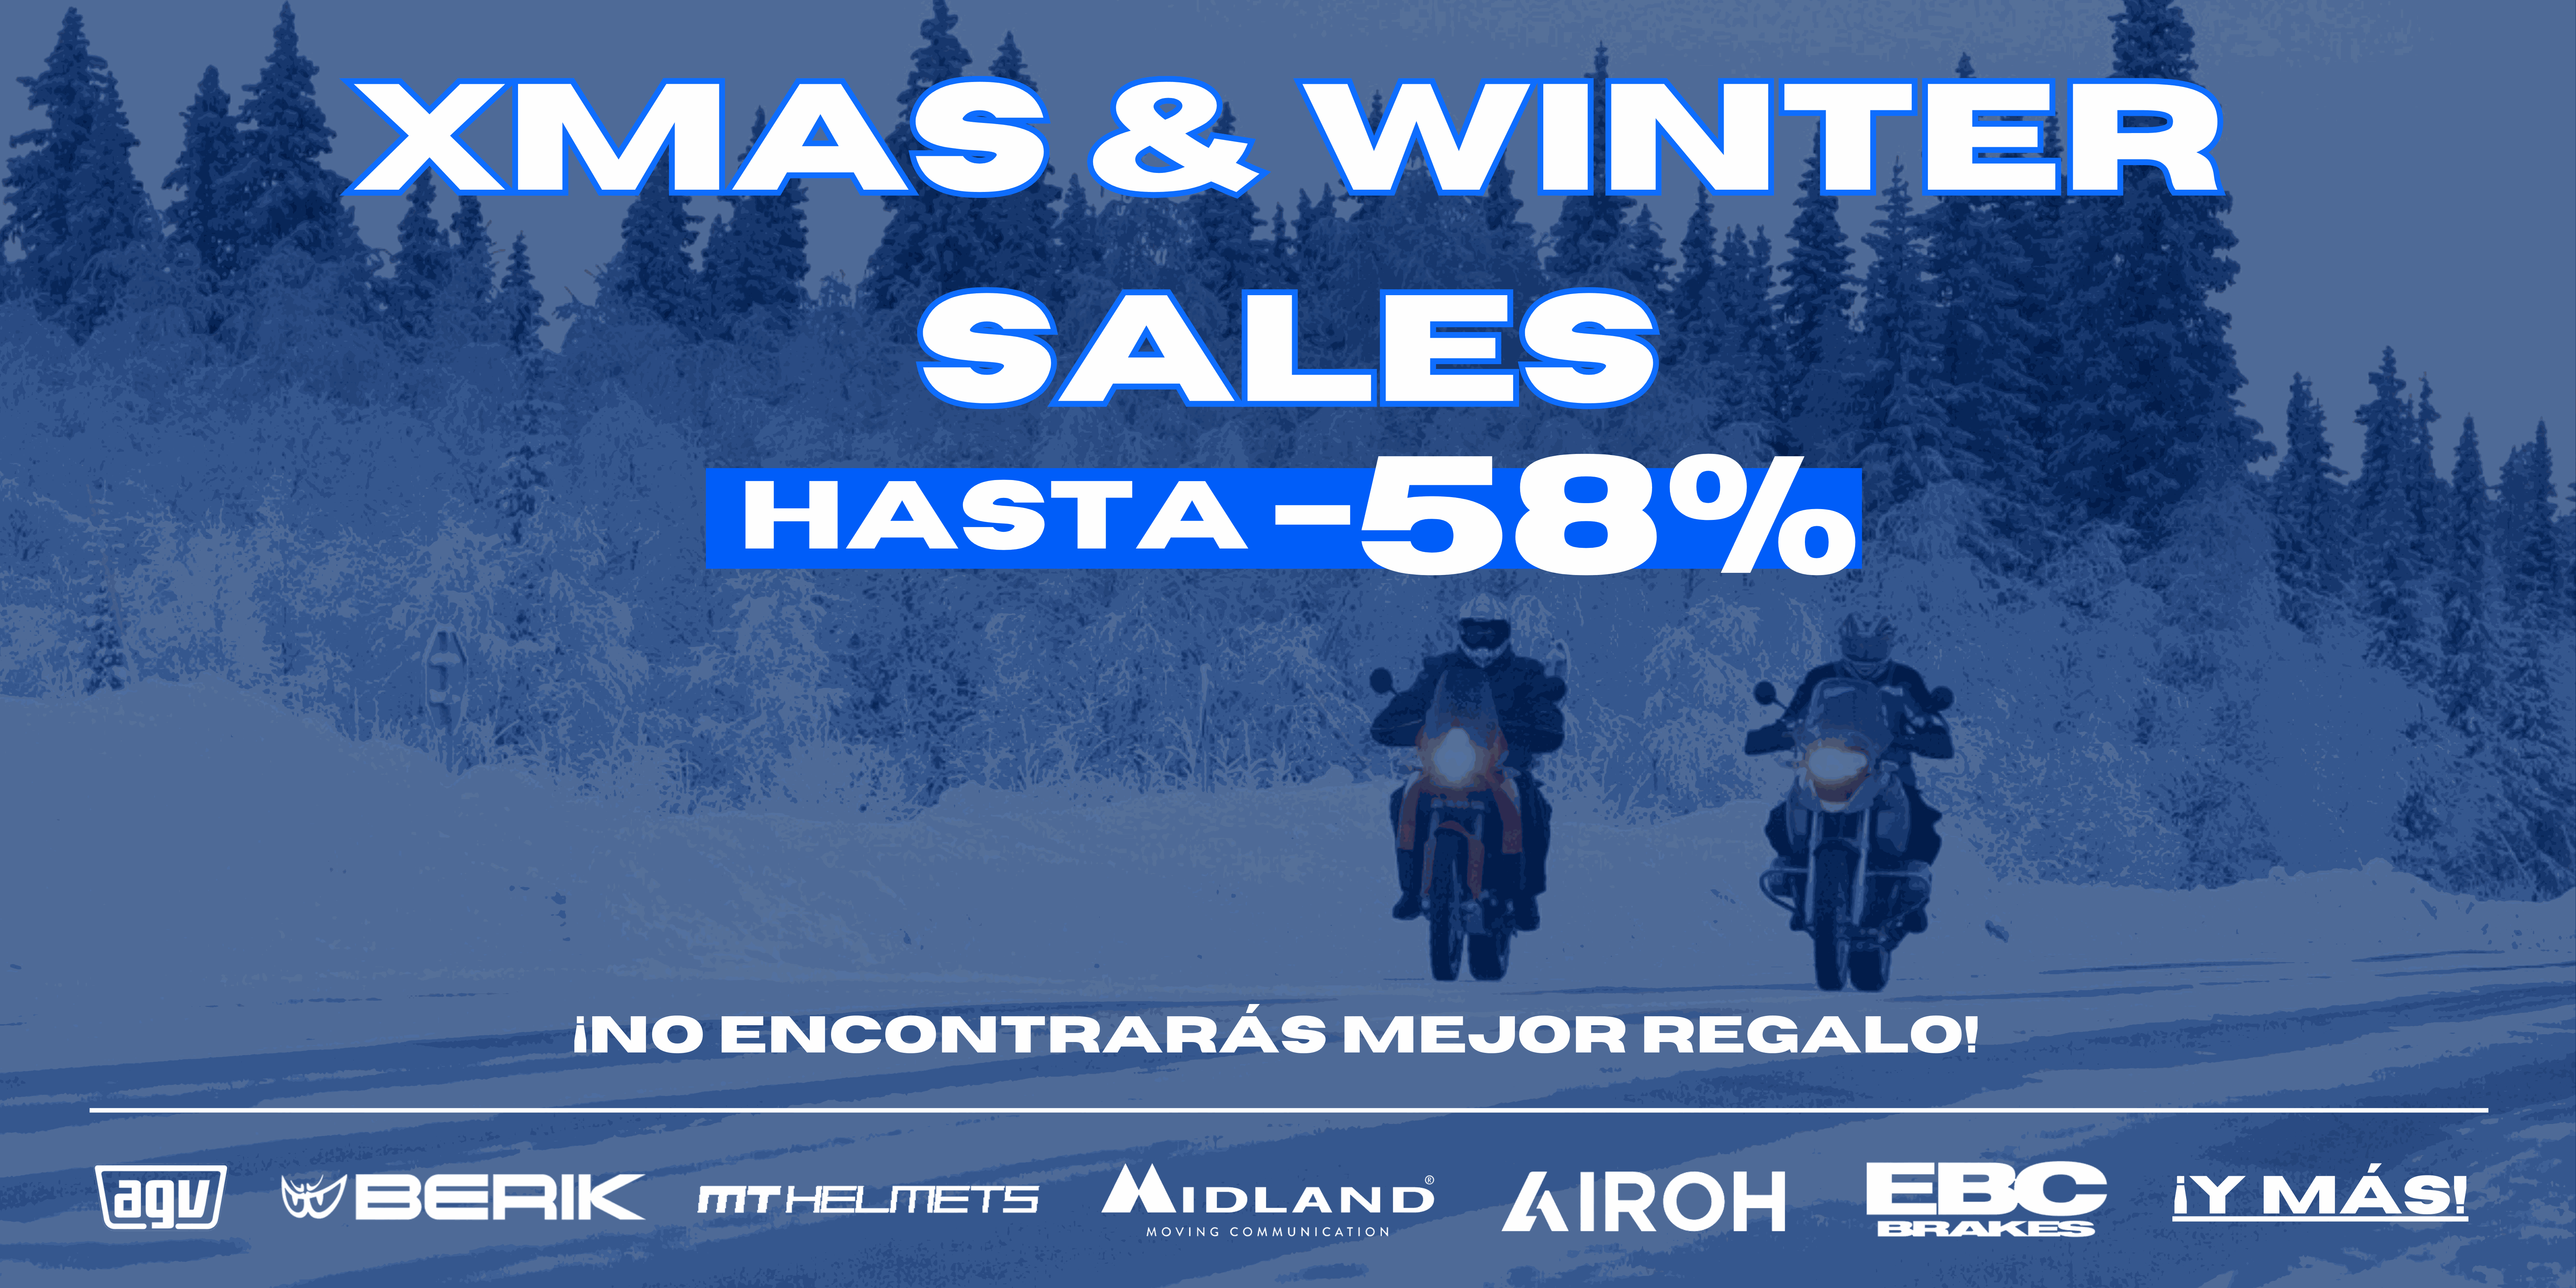 xmas-winter-sales